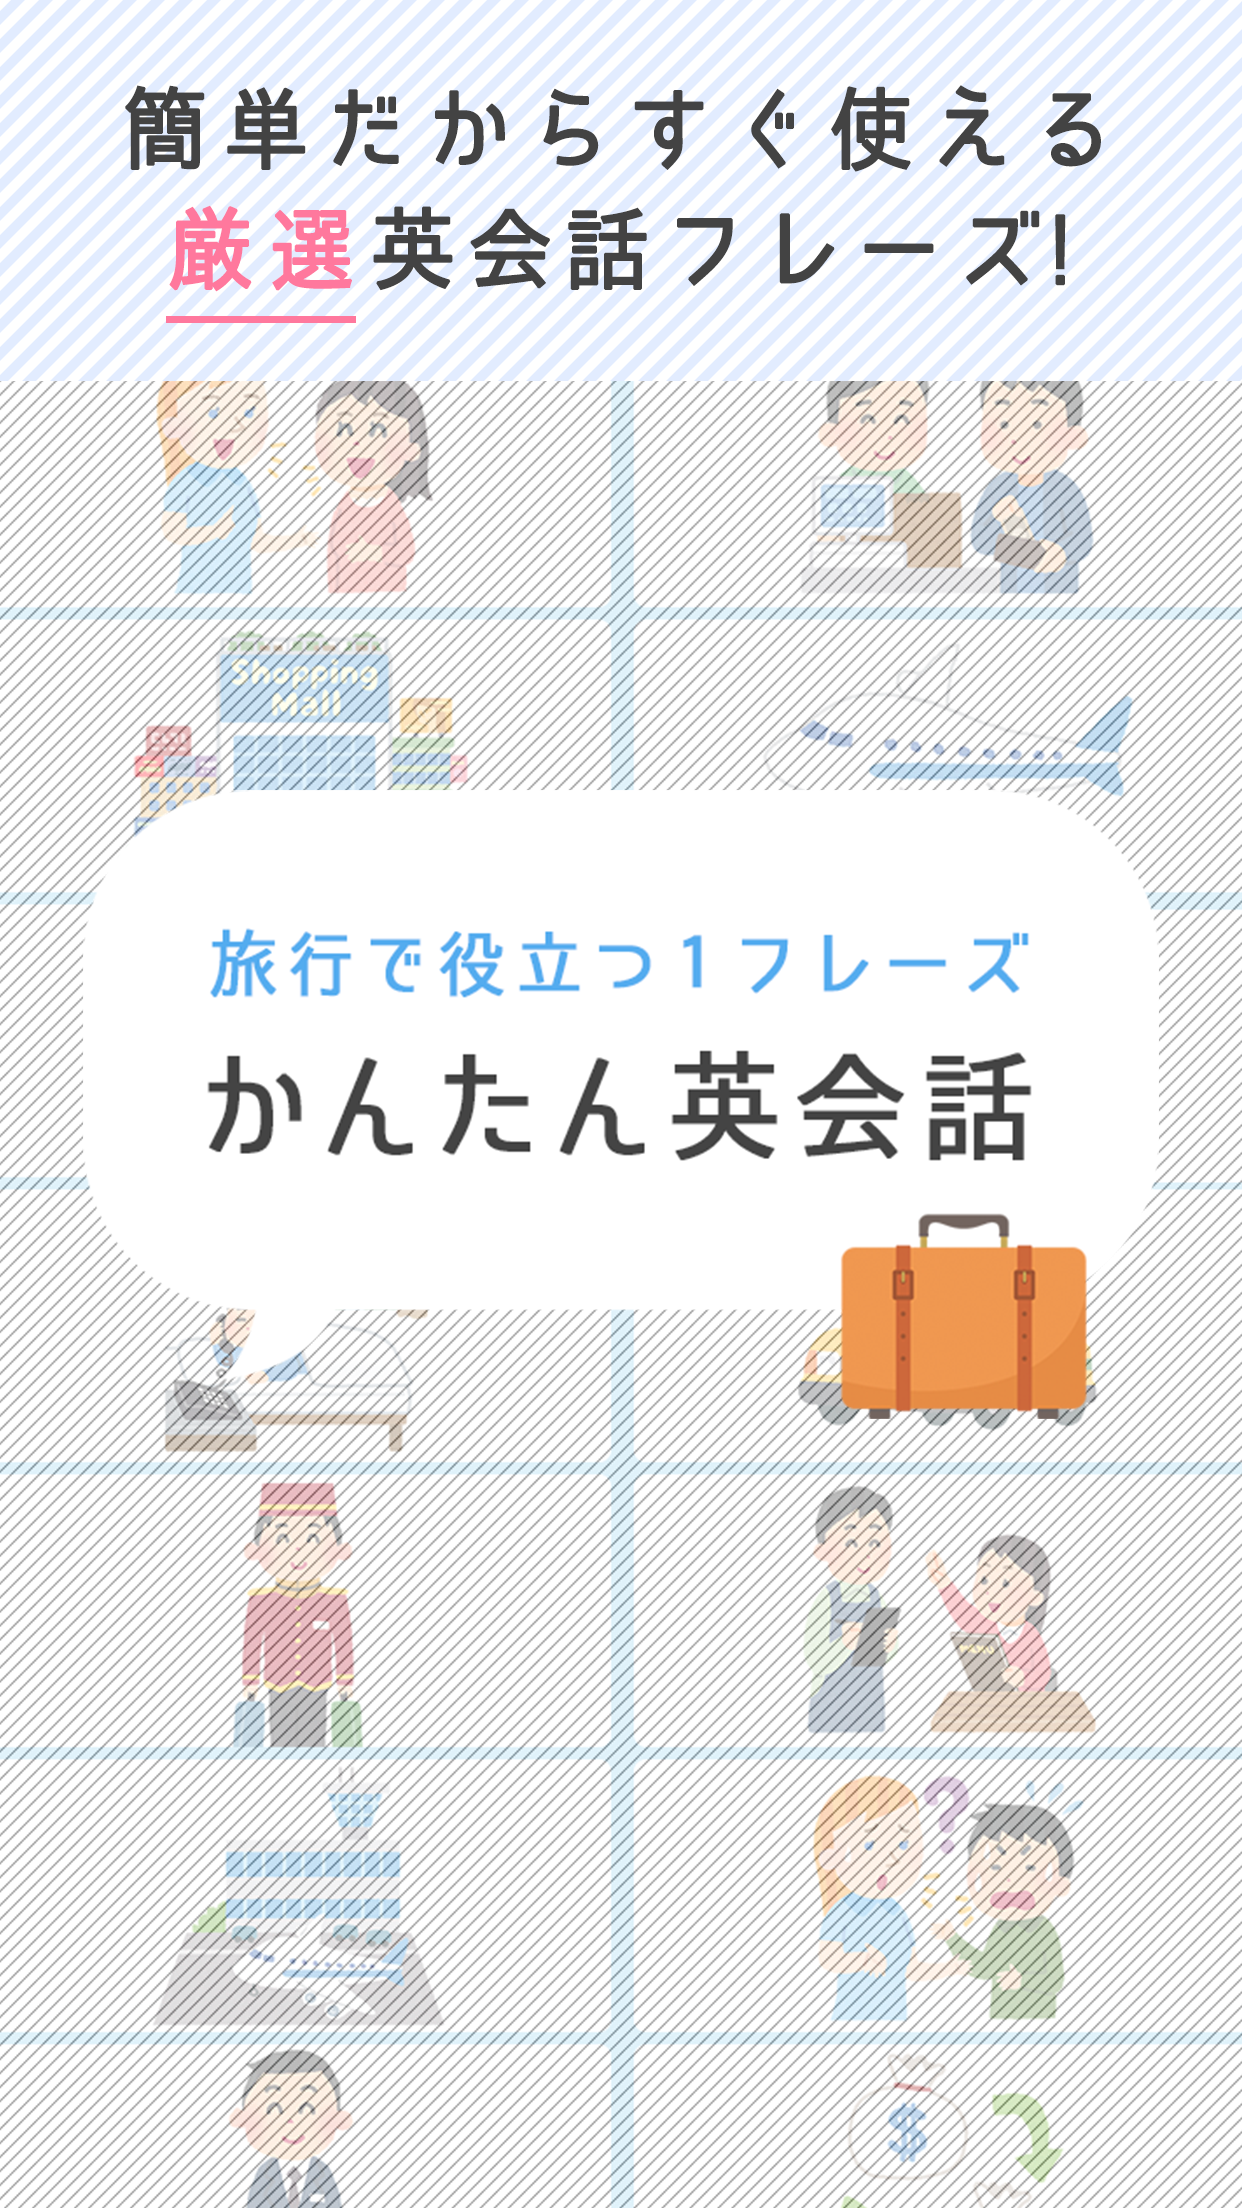 Screenshot 1 of Conversación en inglés fácil: cuestionarios en inglés fáciles y gratuitos, útiles para viajar al extranjero. 1.1.3